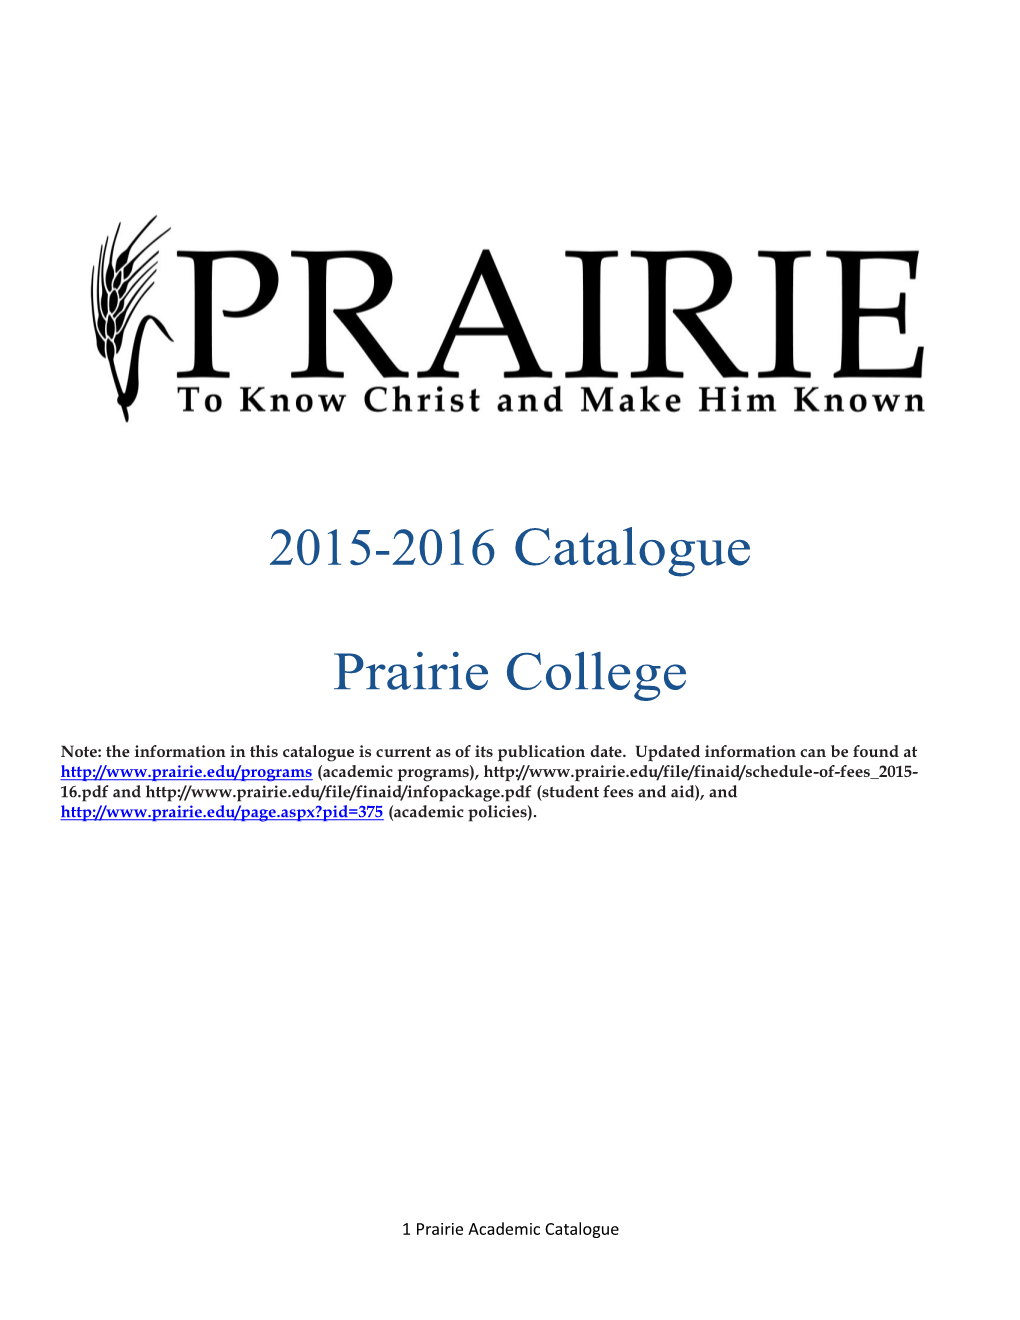 2015-2016 Prairie College Catalogue